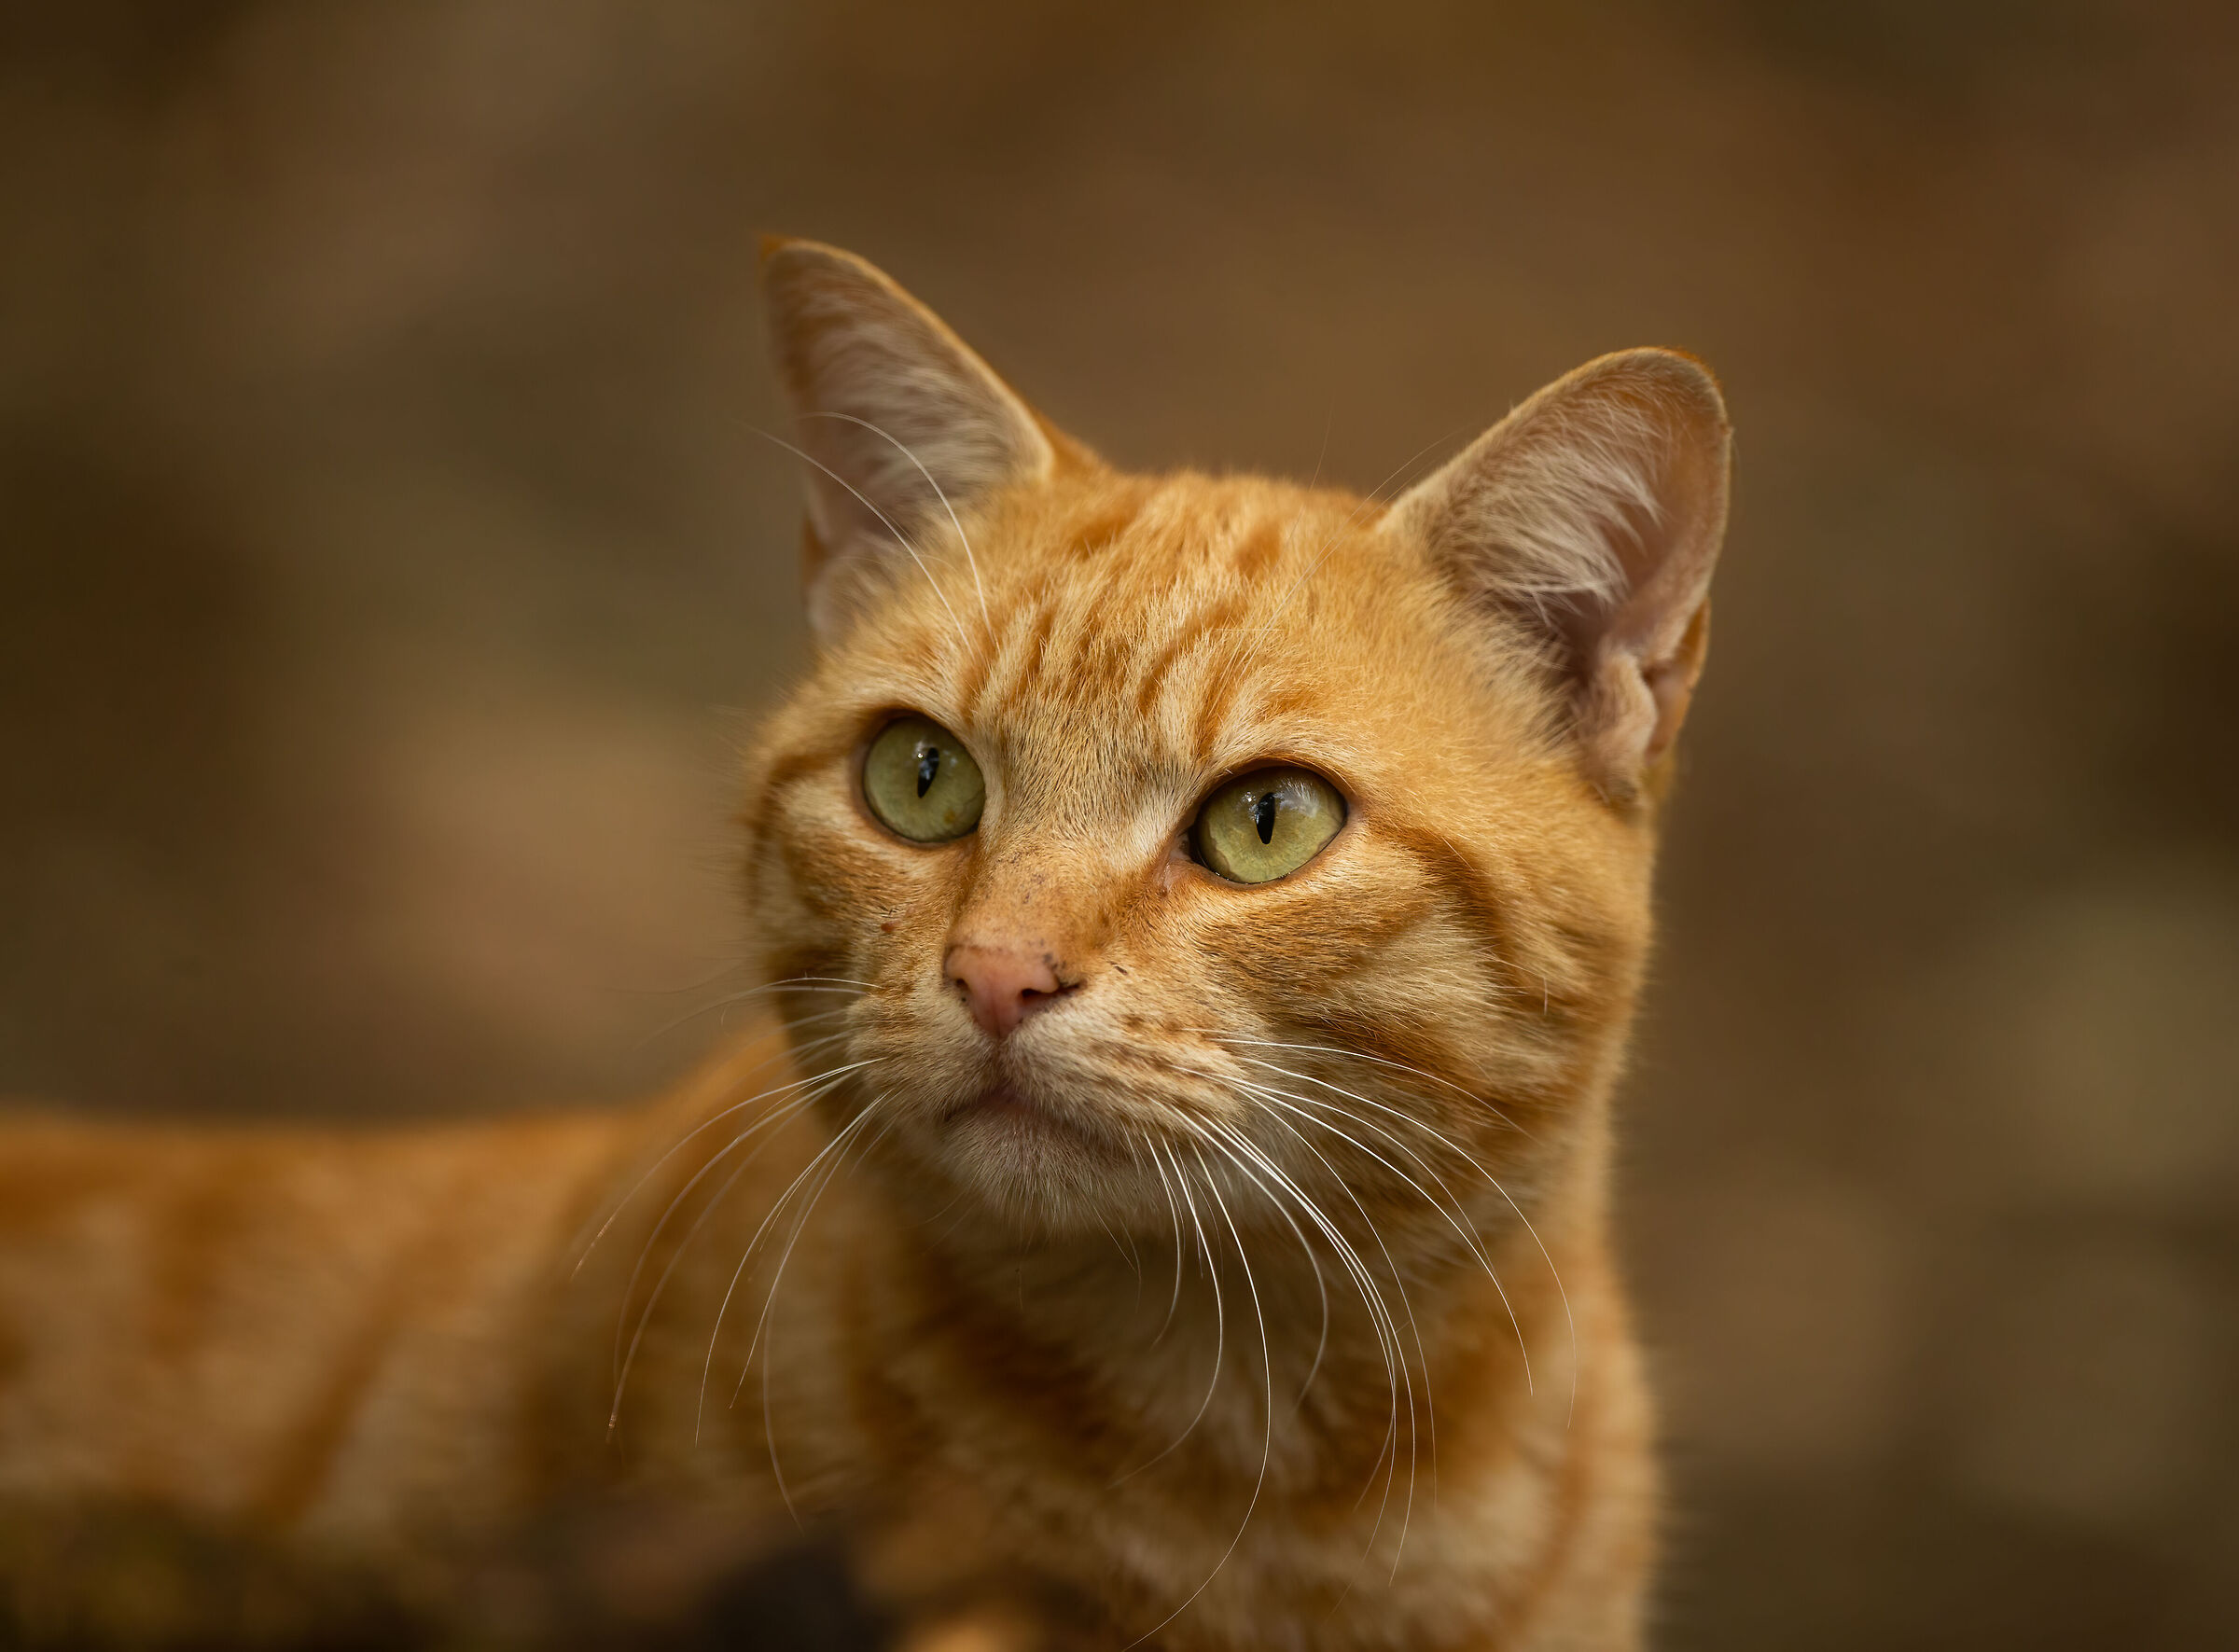 European Orange Cat (Garfield)...